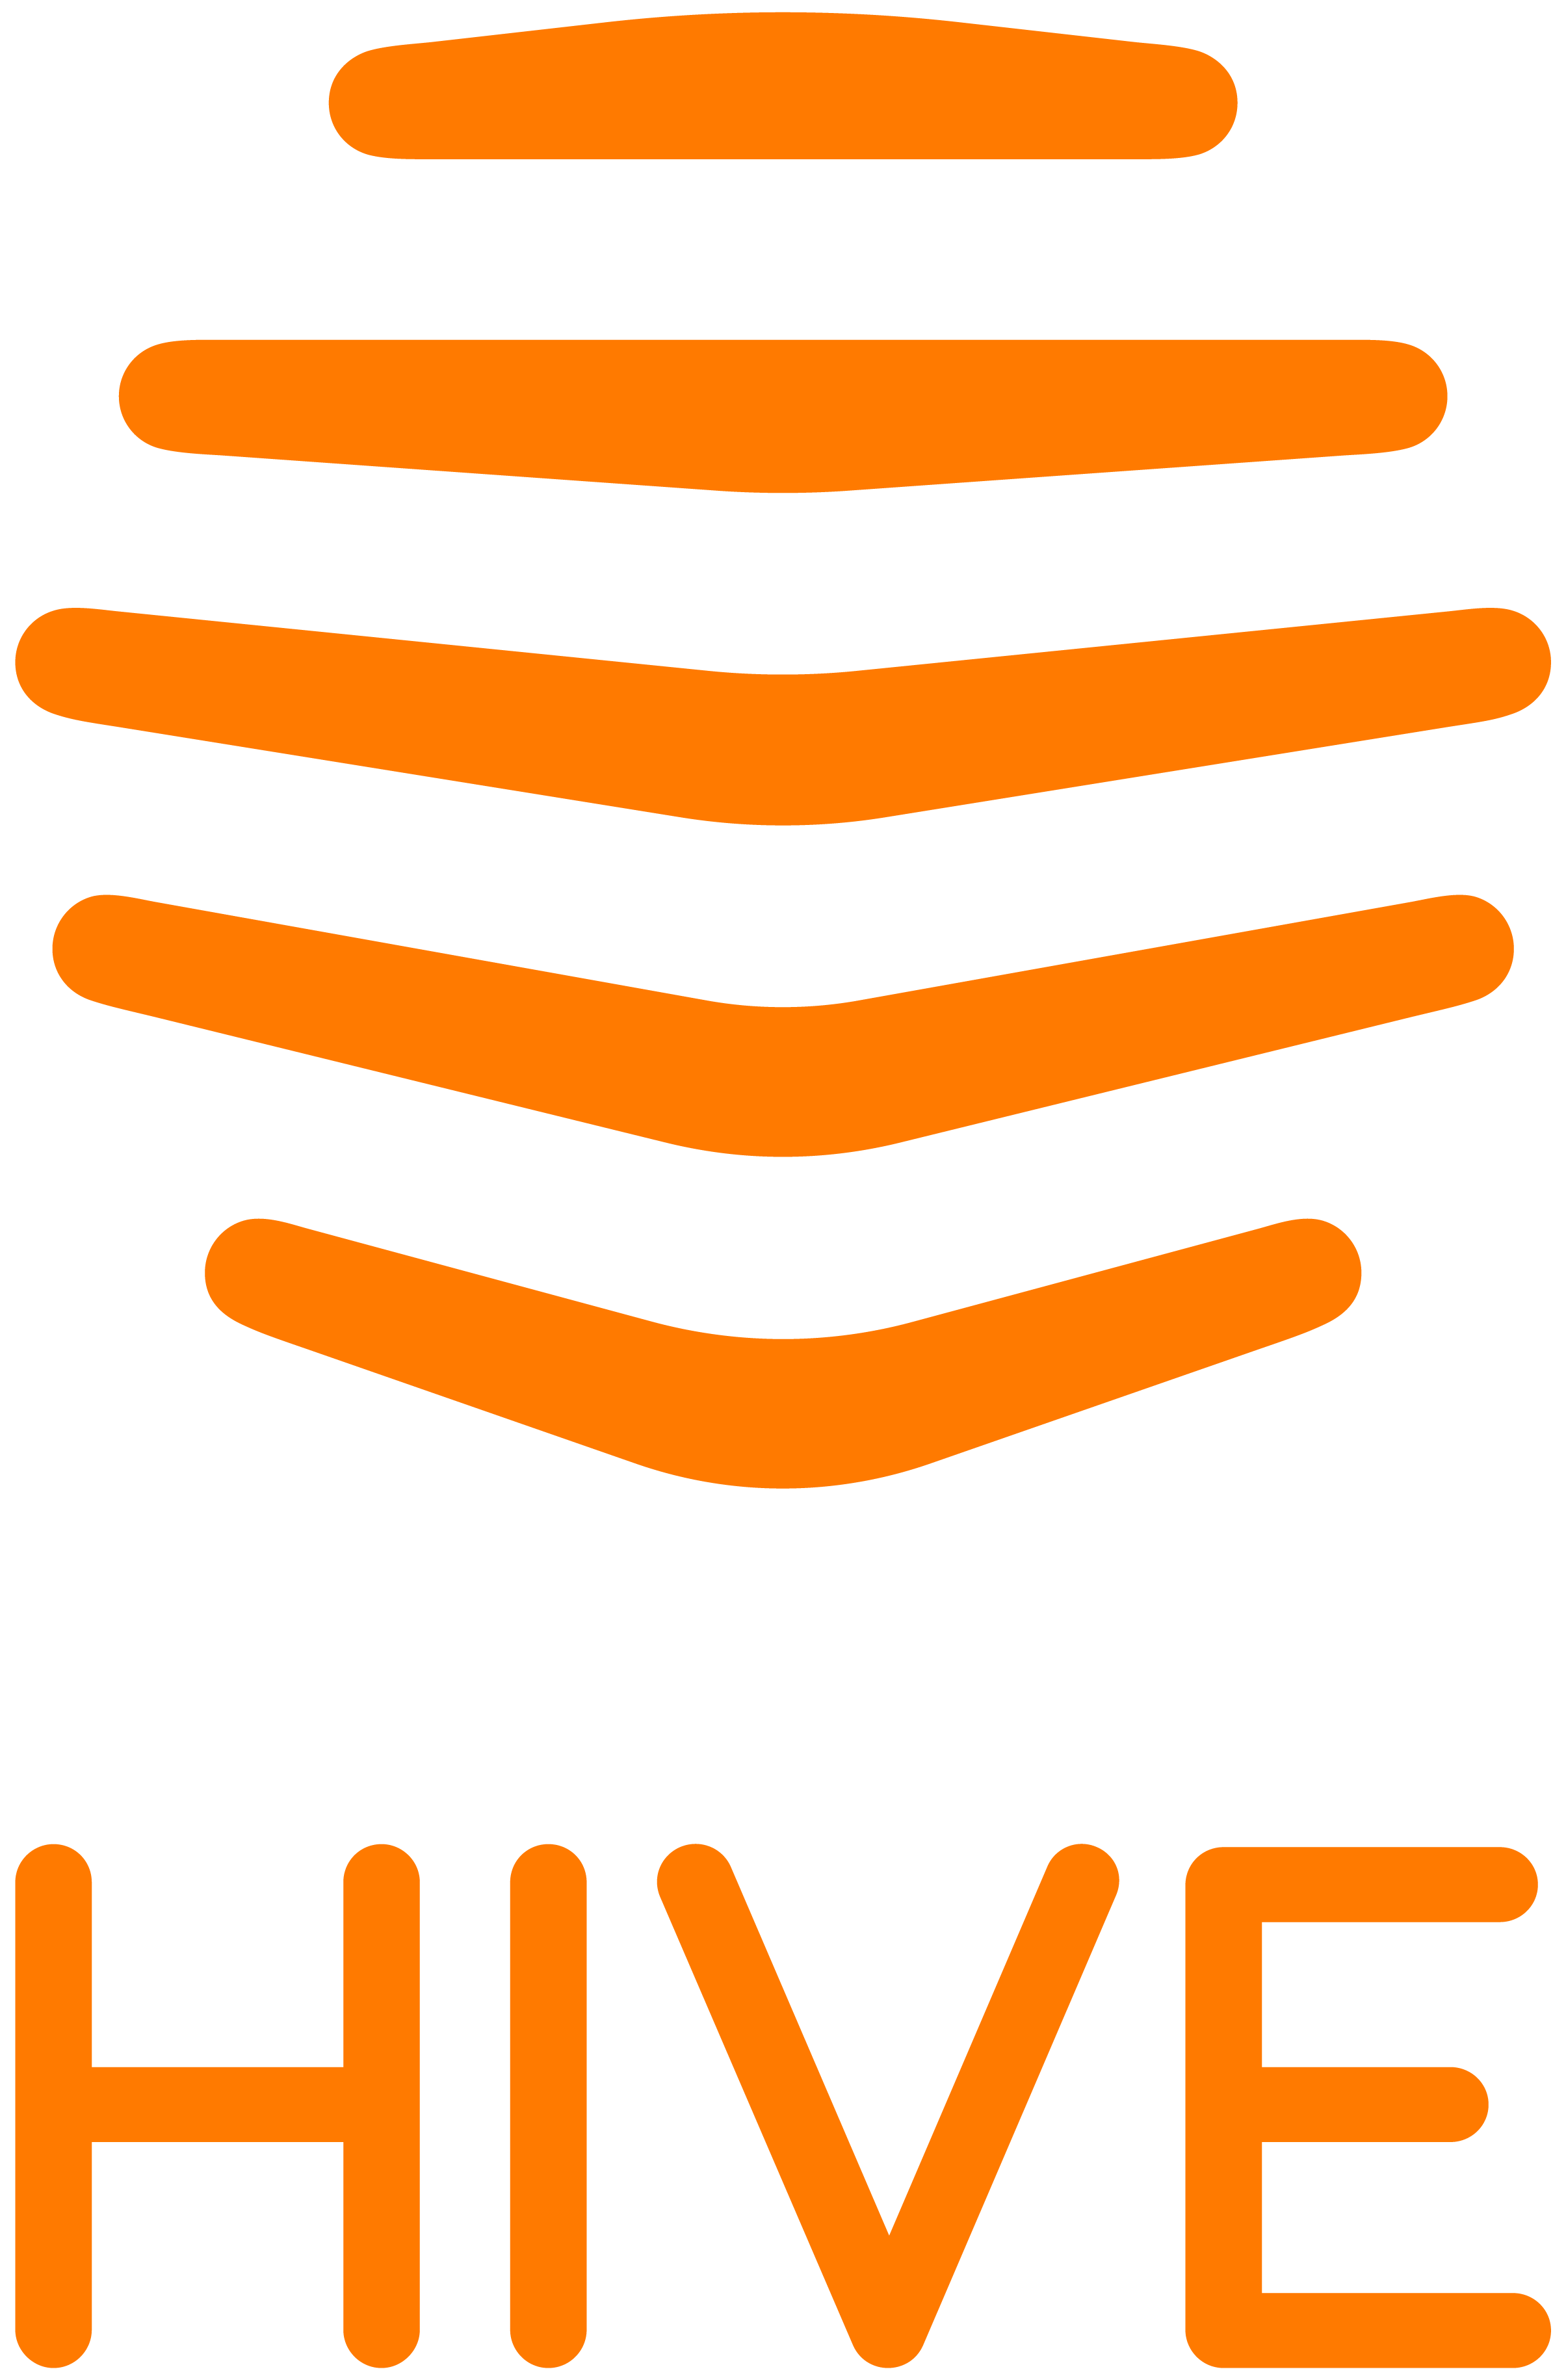 Logo HIVE